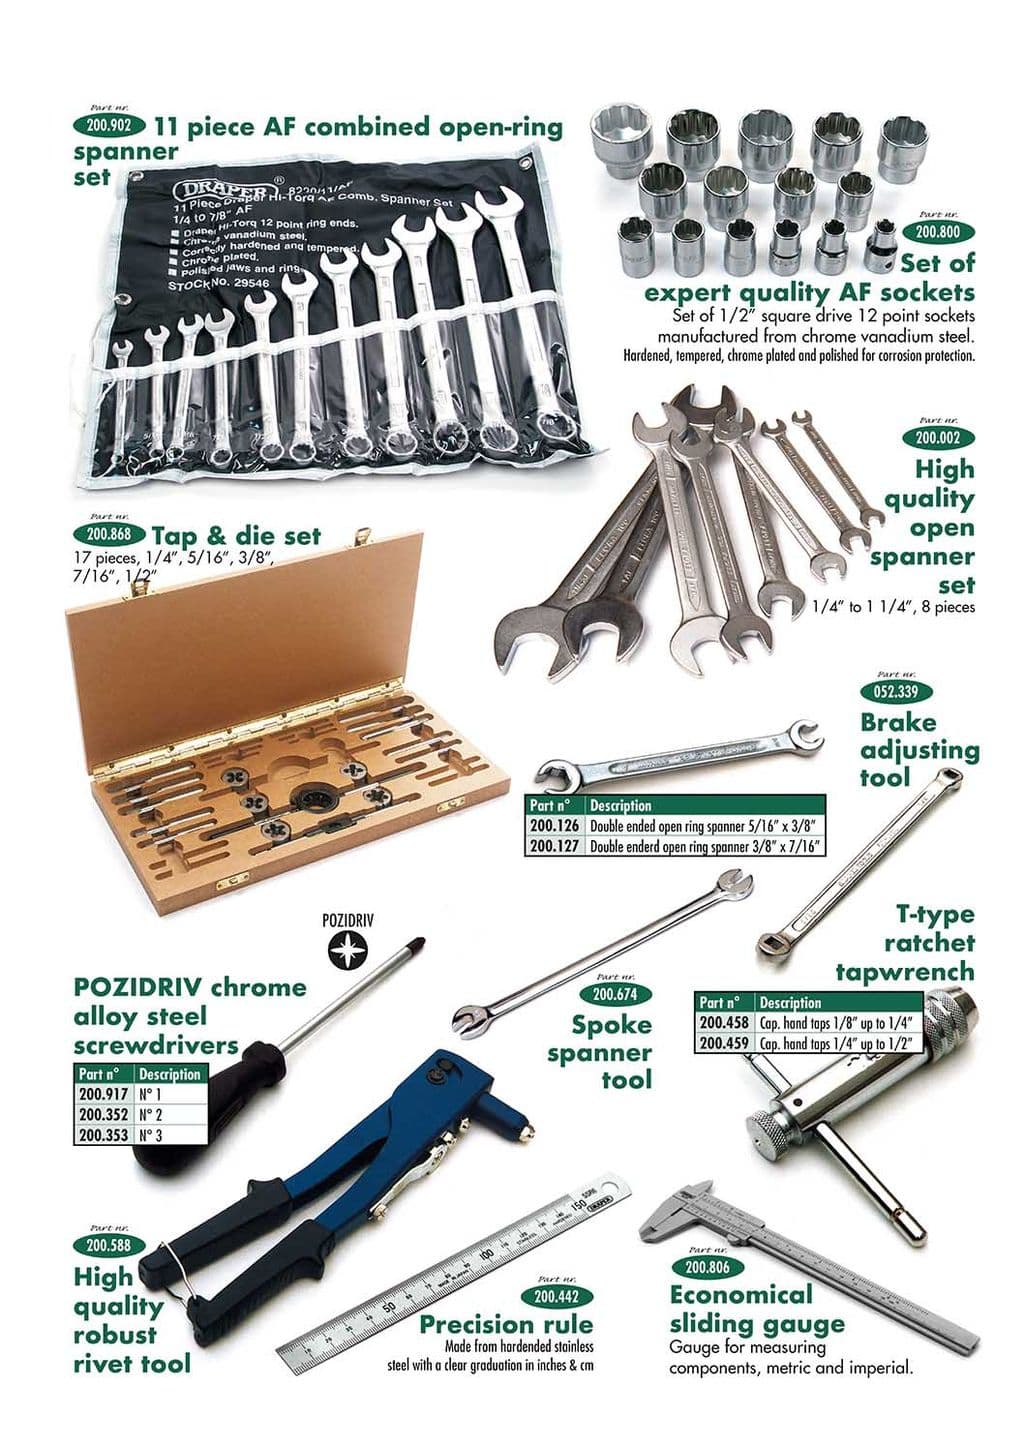 Tools 2 - Warsztat & Narzędzia - Konserwacja & przechowywanie - Triumph TR5-250-6 1967-'76 - Tools 2 - 1